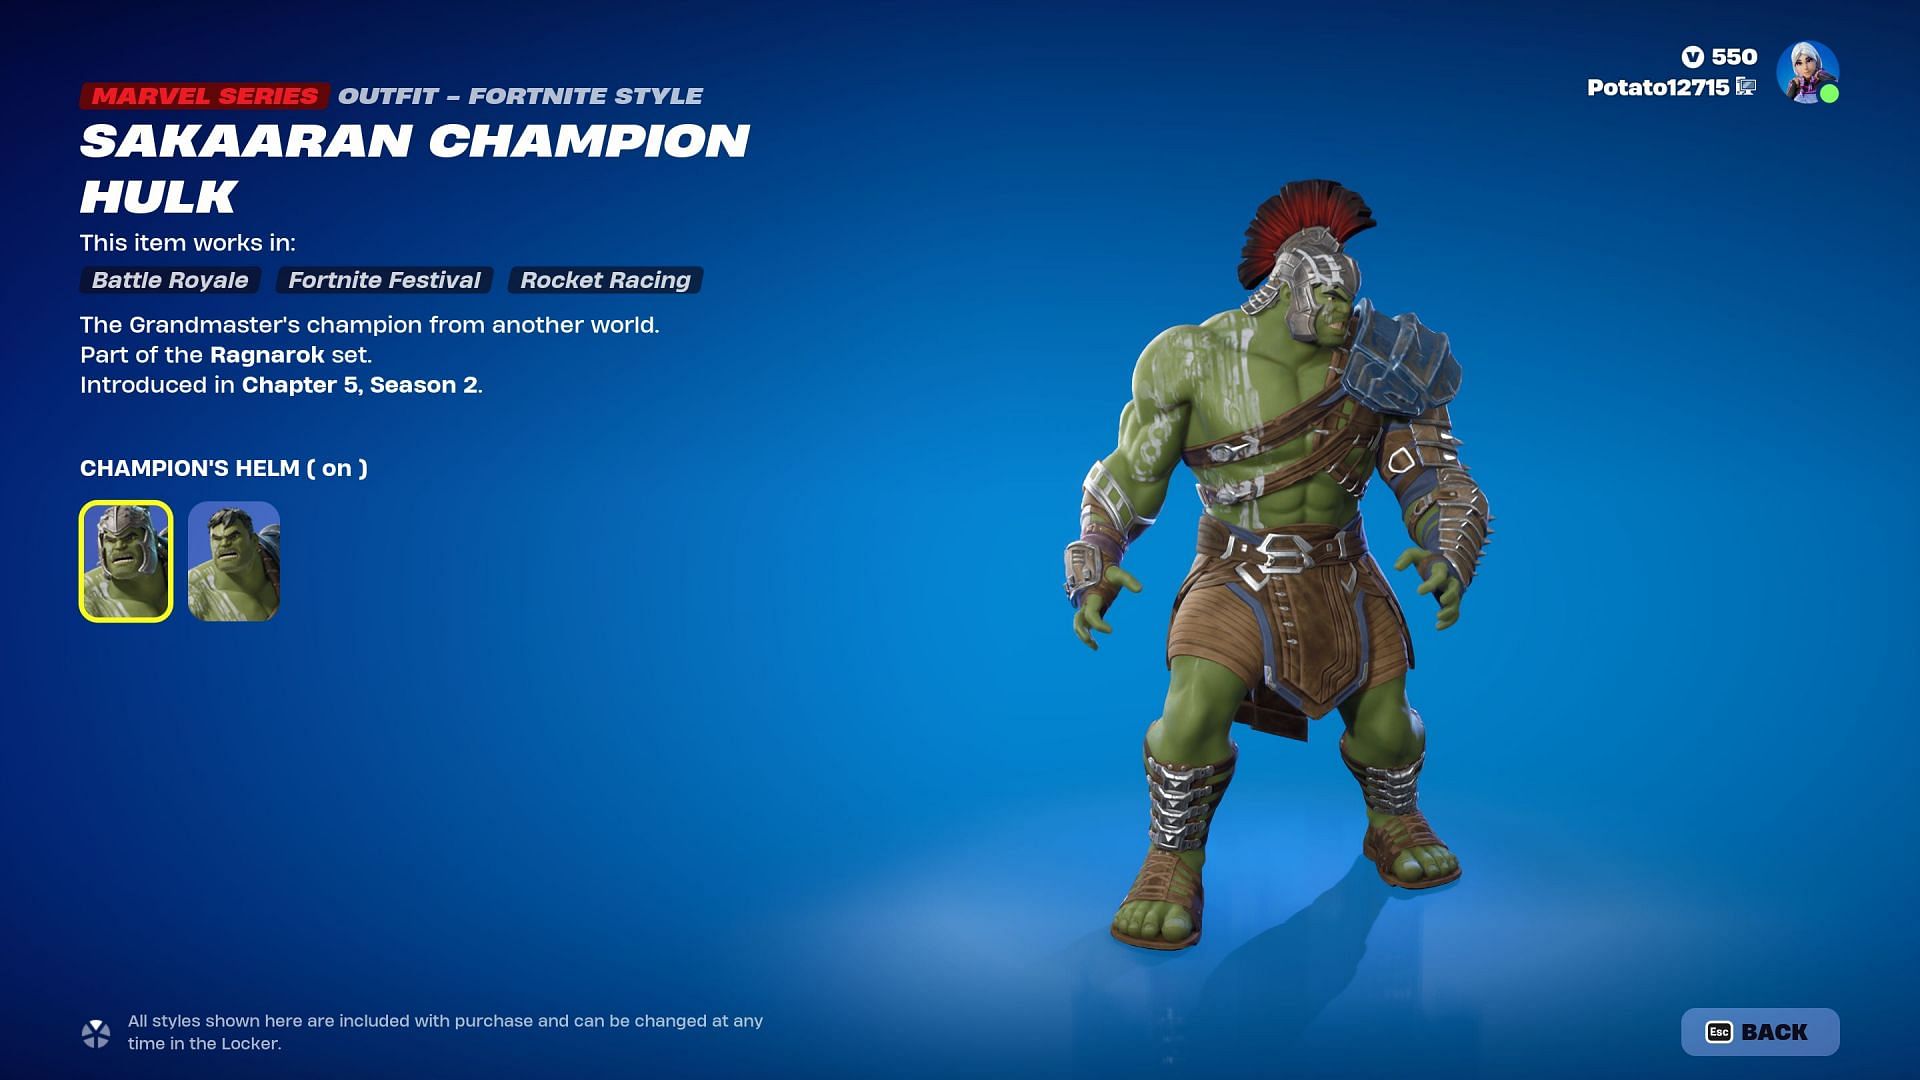 Sakaaran Champion Hulk smash! (Image via Epic Games/Fortnite)